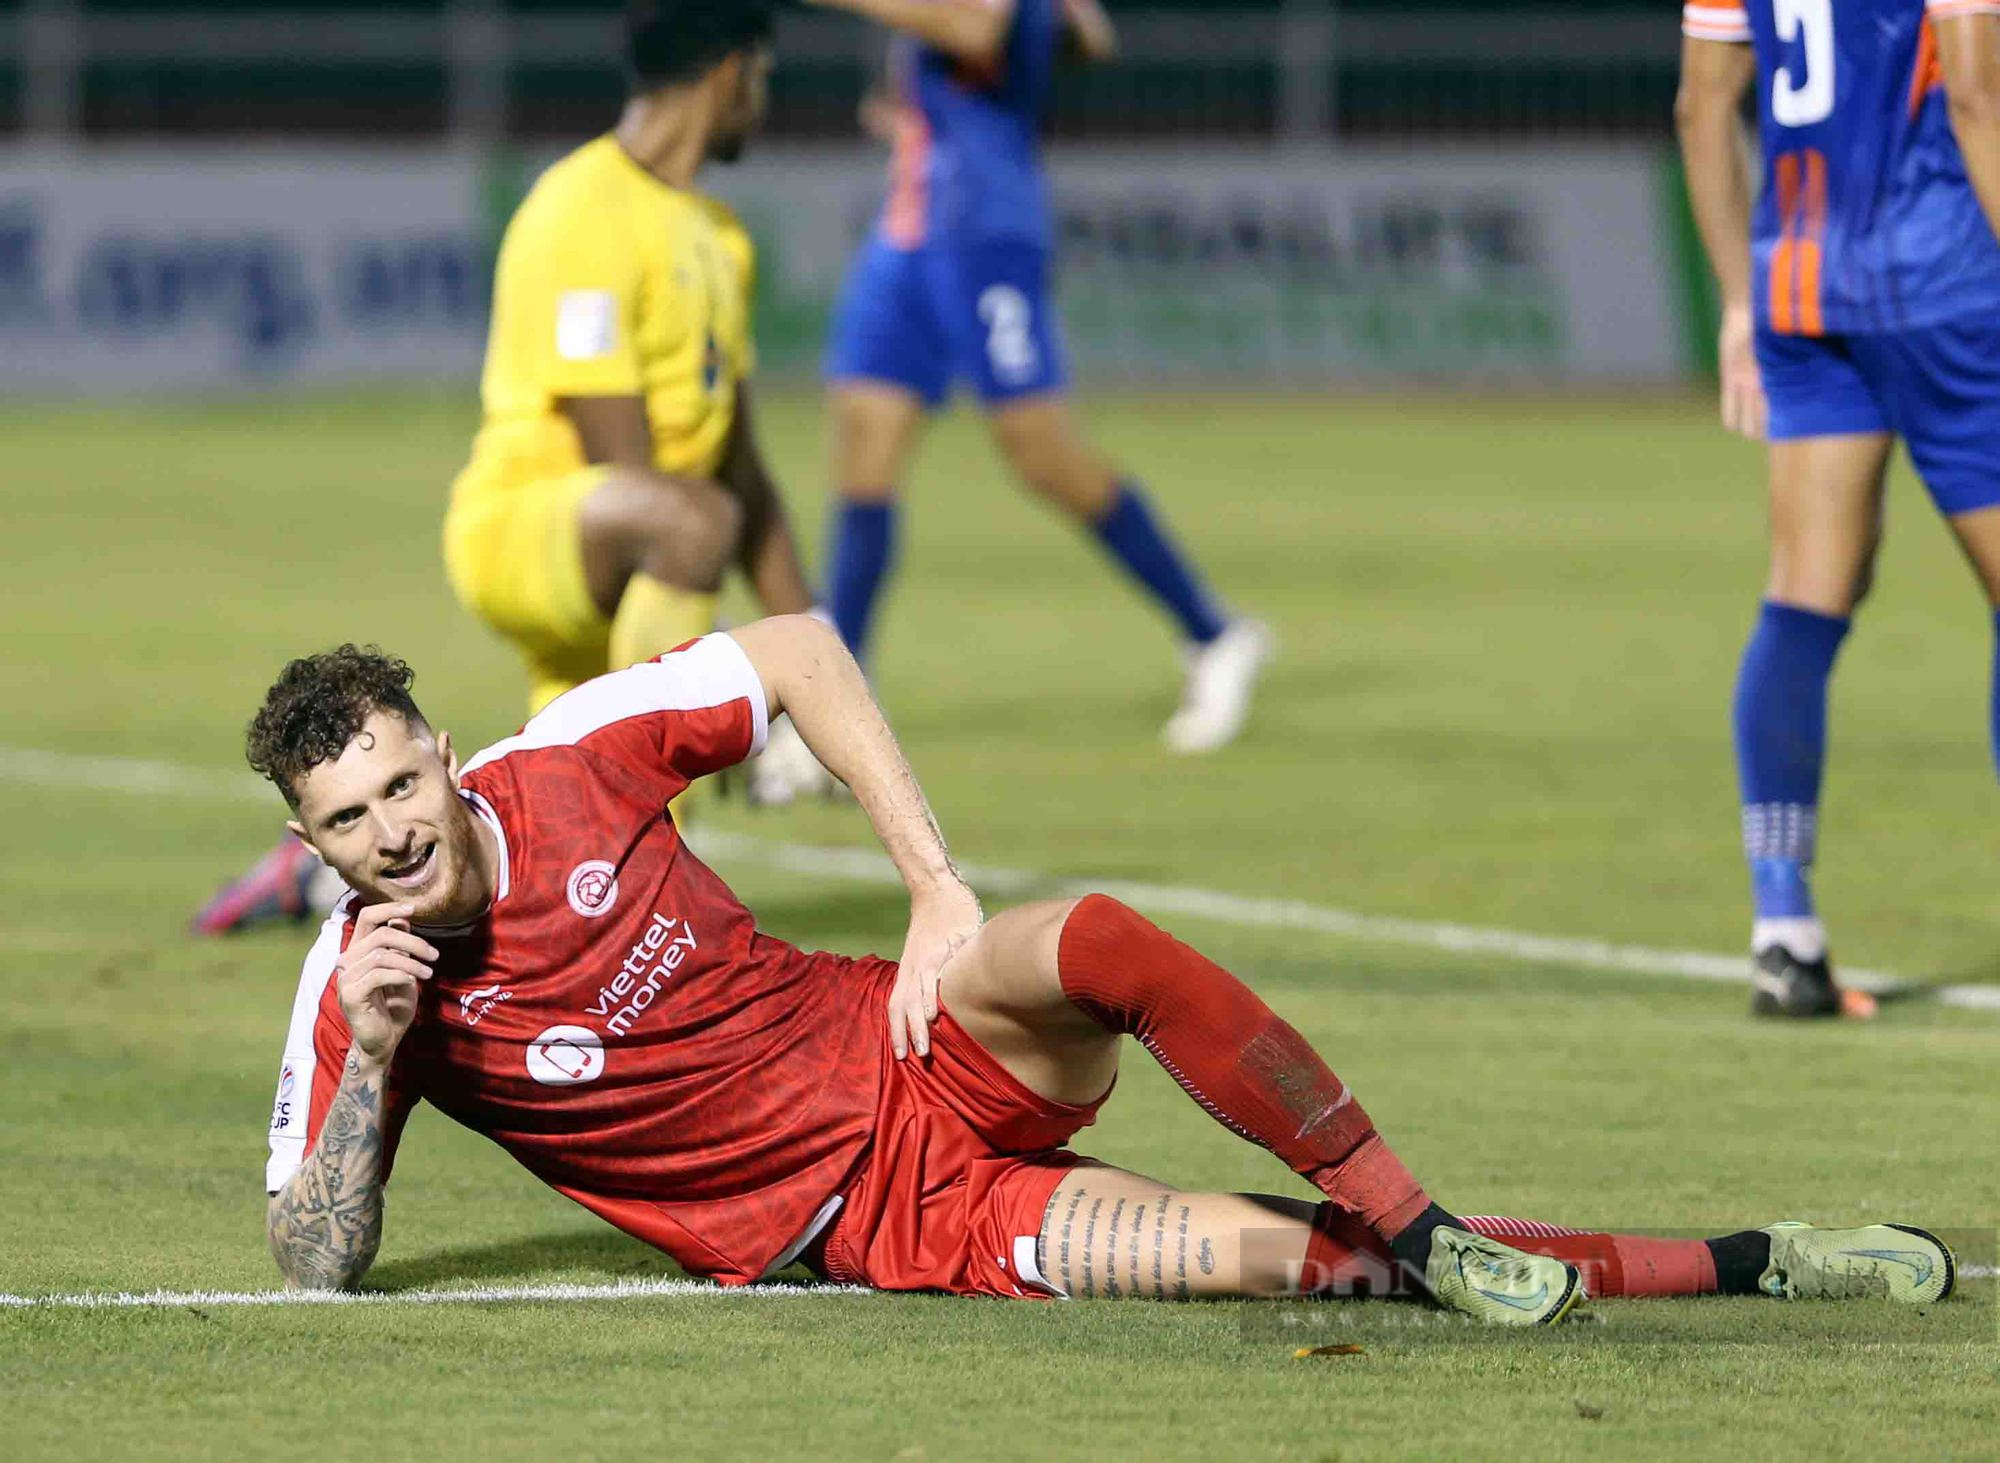 Nhâm Mạnh Dũng kiến tạo, Viettel đánh bại bóng Singapore vượt qua vòng bảng AFC Cup - Ảnh 10.